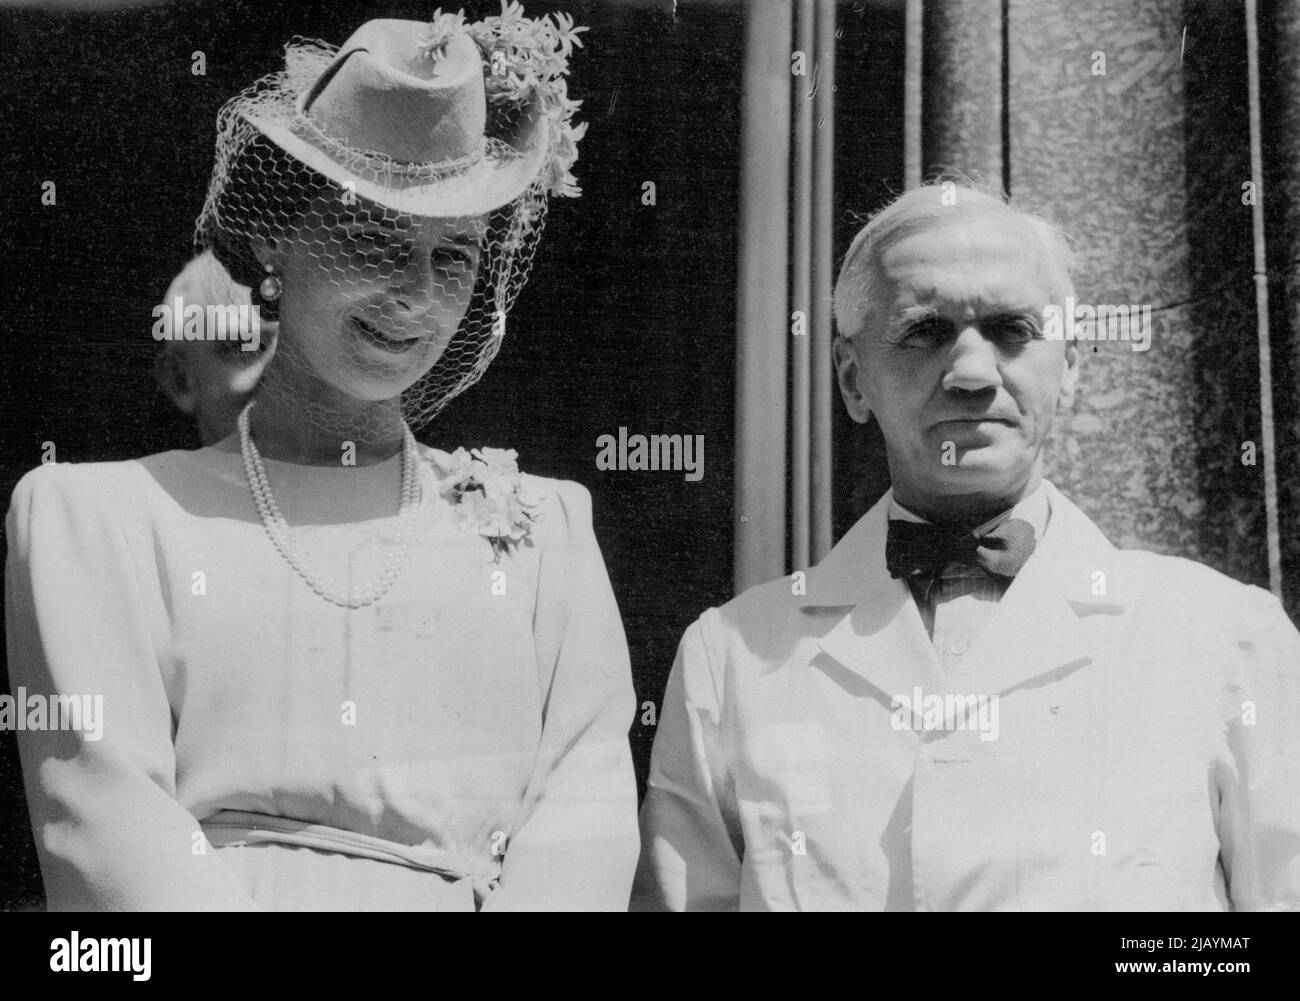 Herzogin von Kent trifft Entdecker von Penicillin -- die Herzogin von Kent mit Sir Alexander Fleming, Entdecker von Penicillin, im St. Mary's Hospital, Paddington. HRH, die Herzogin von Kent, Präsidentin des Alexandra Rose Day Fund, besuchte eine Reihe von Verkaufszentren in London. 20. Juni 1944. (Foto von Planet). Stockfoto